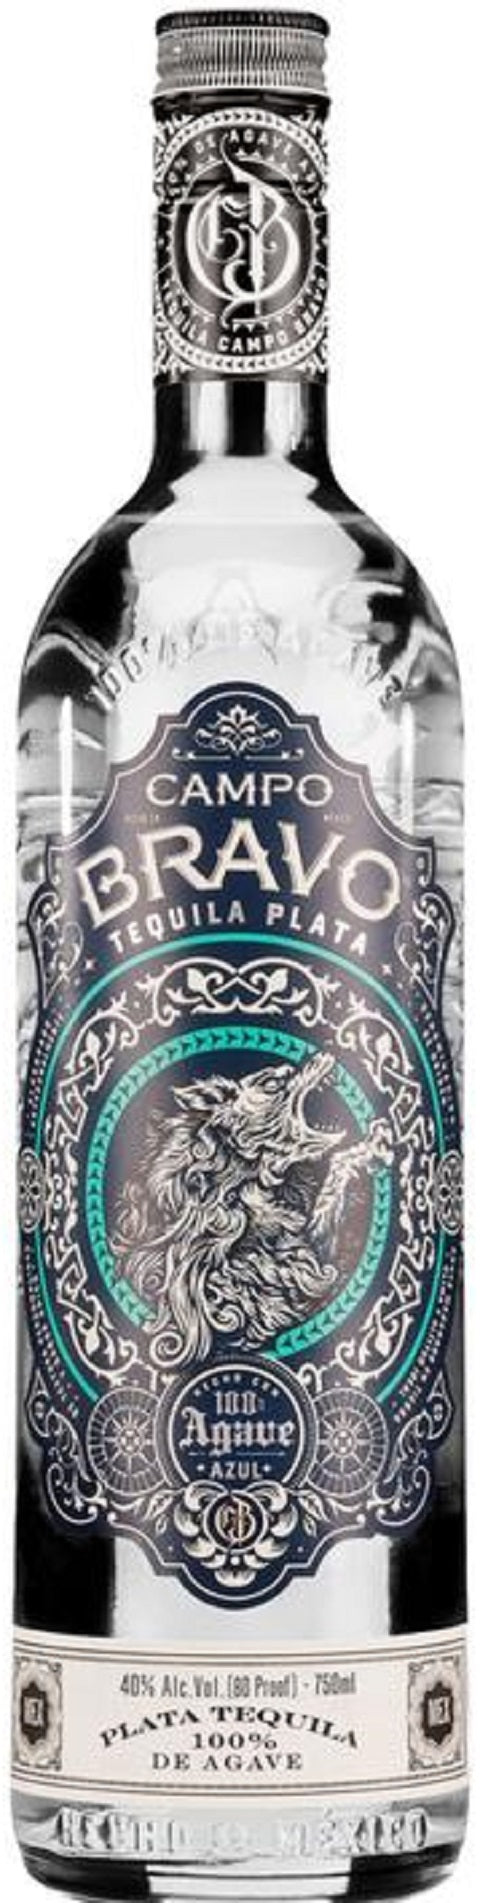 Campo Bravo Tequila Plata